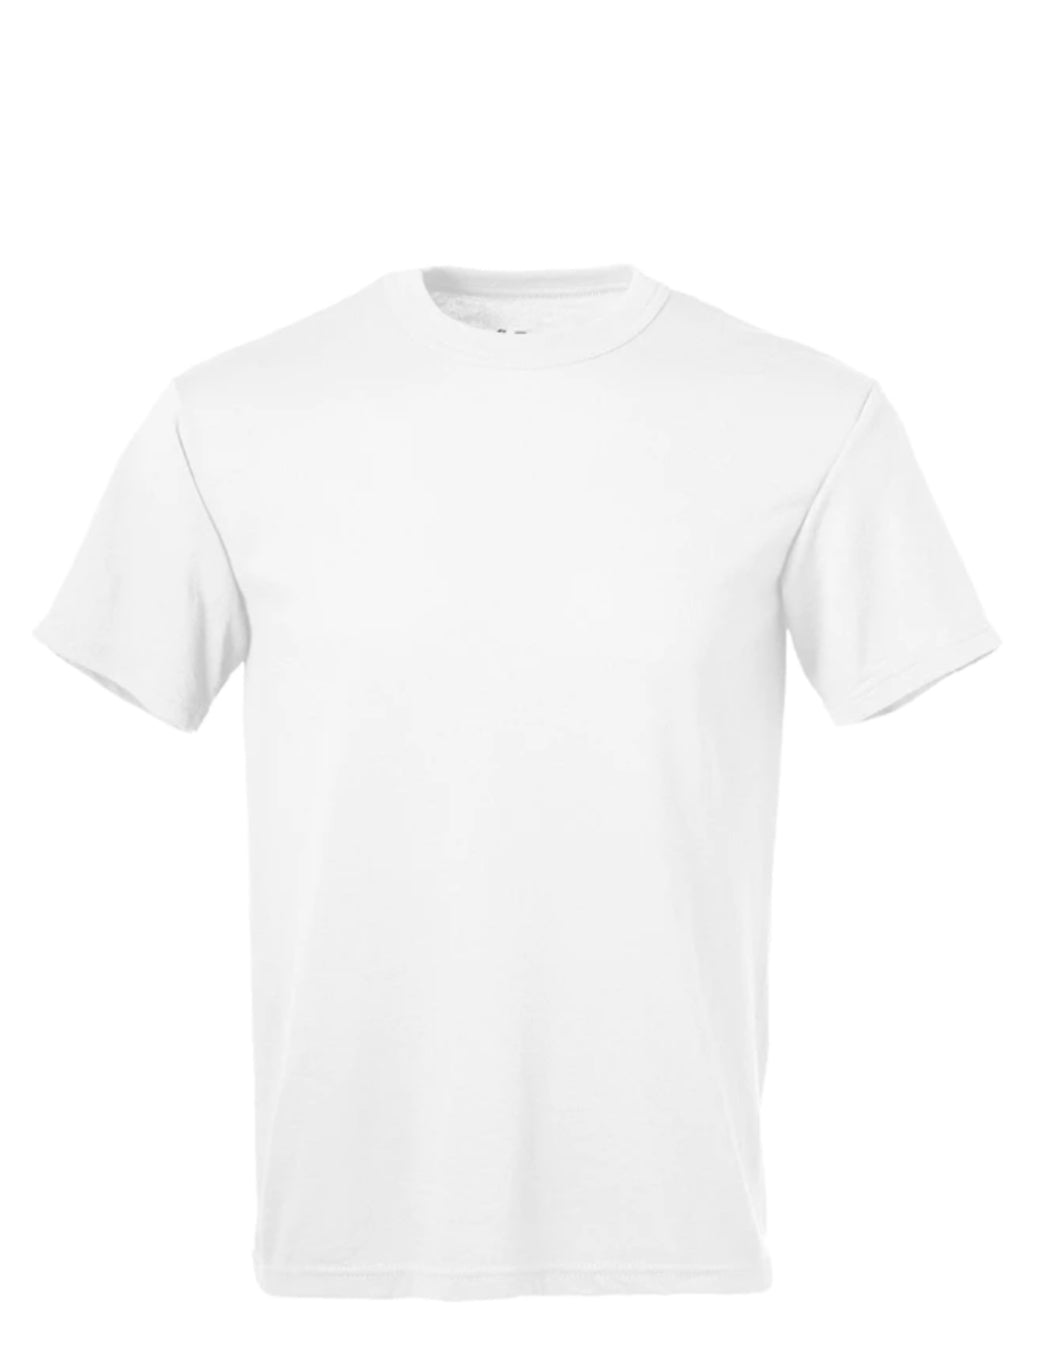 **95% Polyester White T-Shirt- Custom